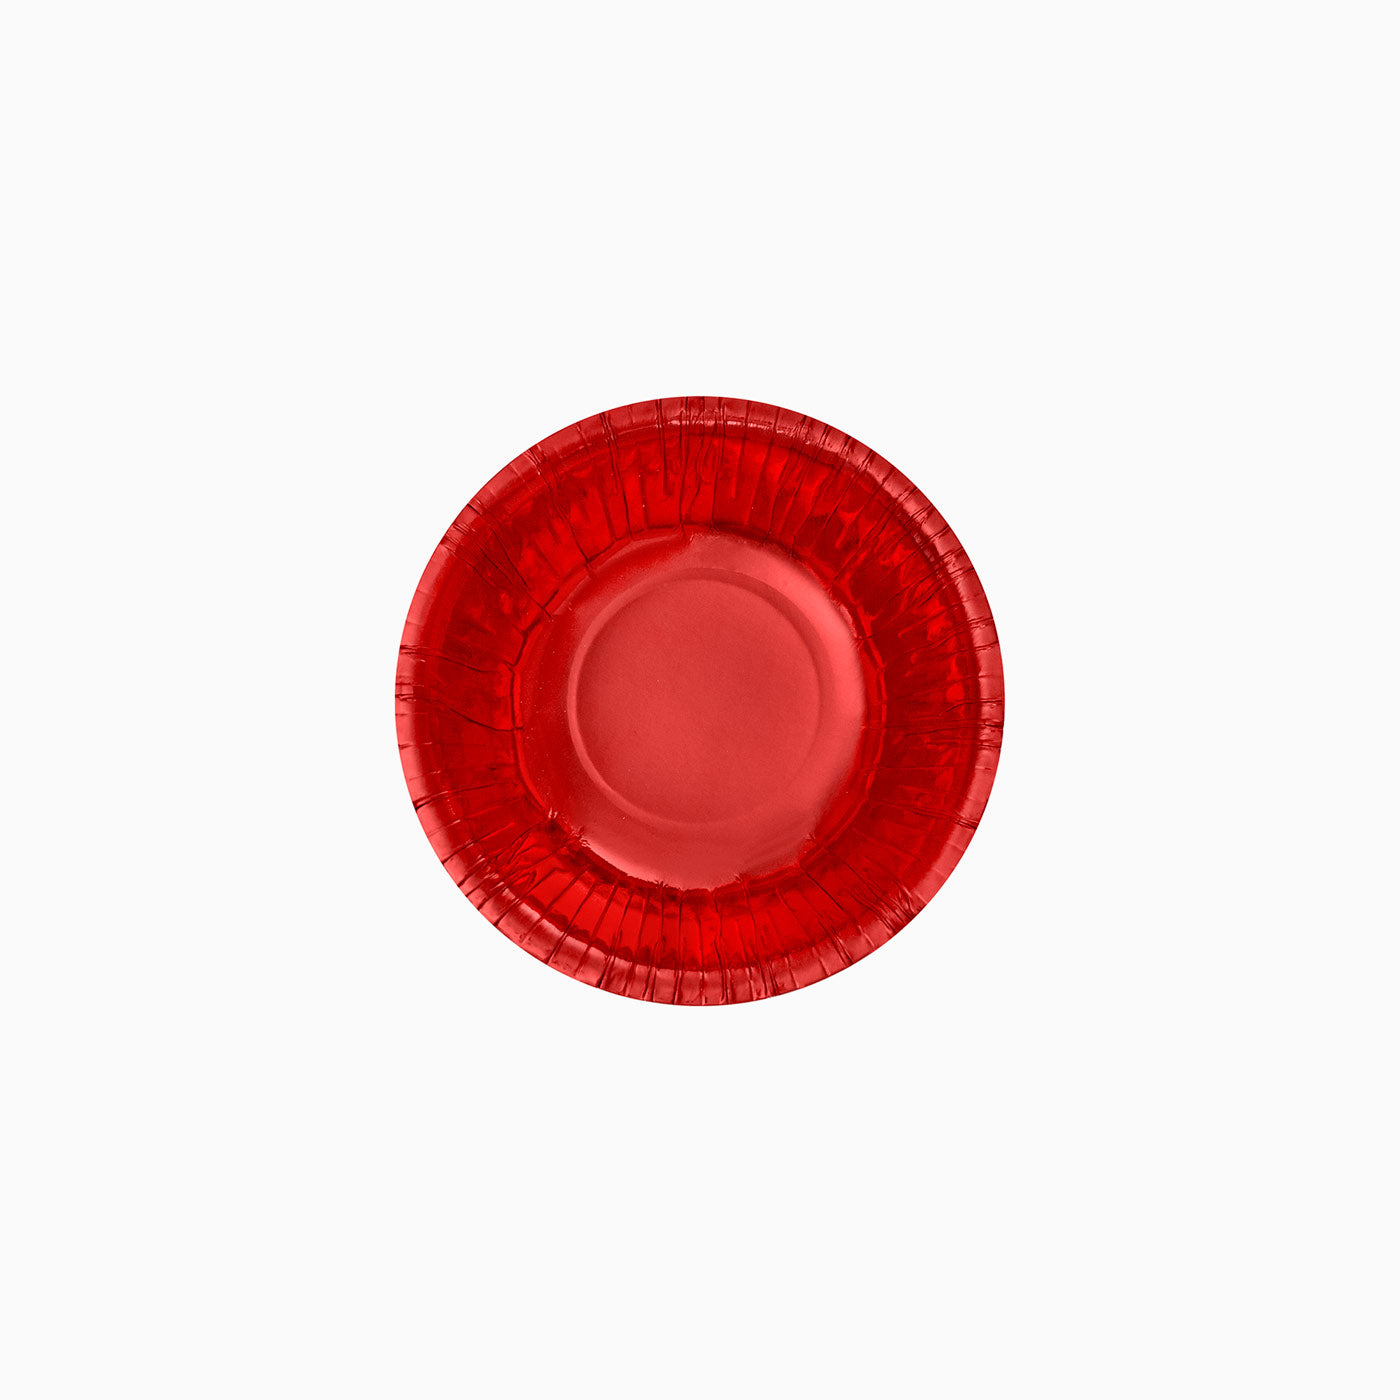 Ciotola rotonda rossa metallizzata / Confezione da 6 unità